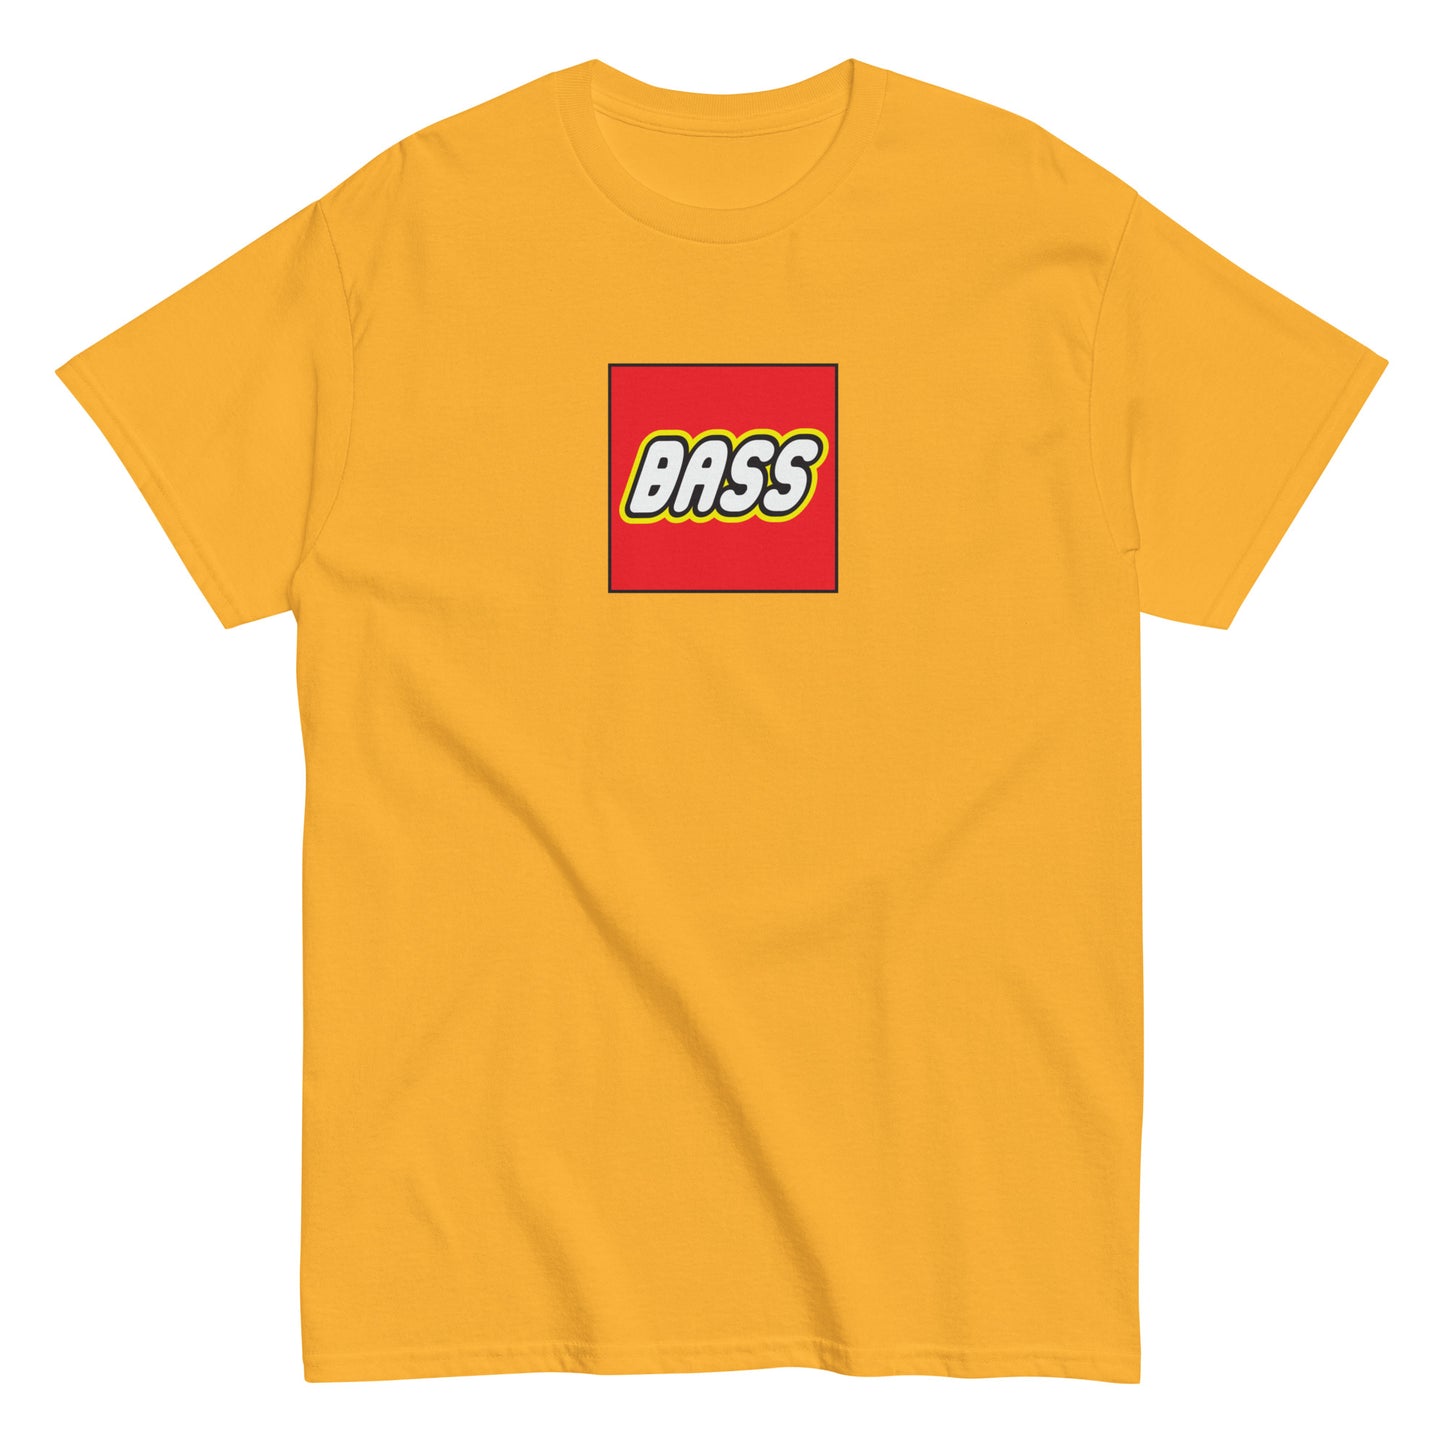 Lego Bass T-Shirt